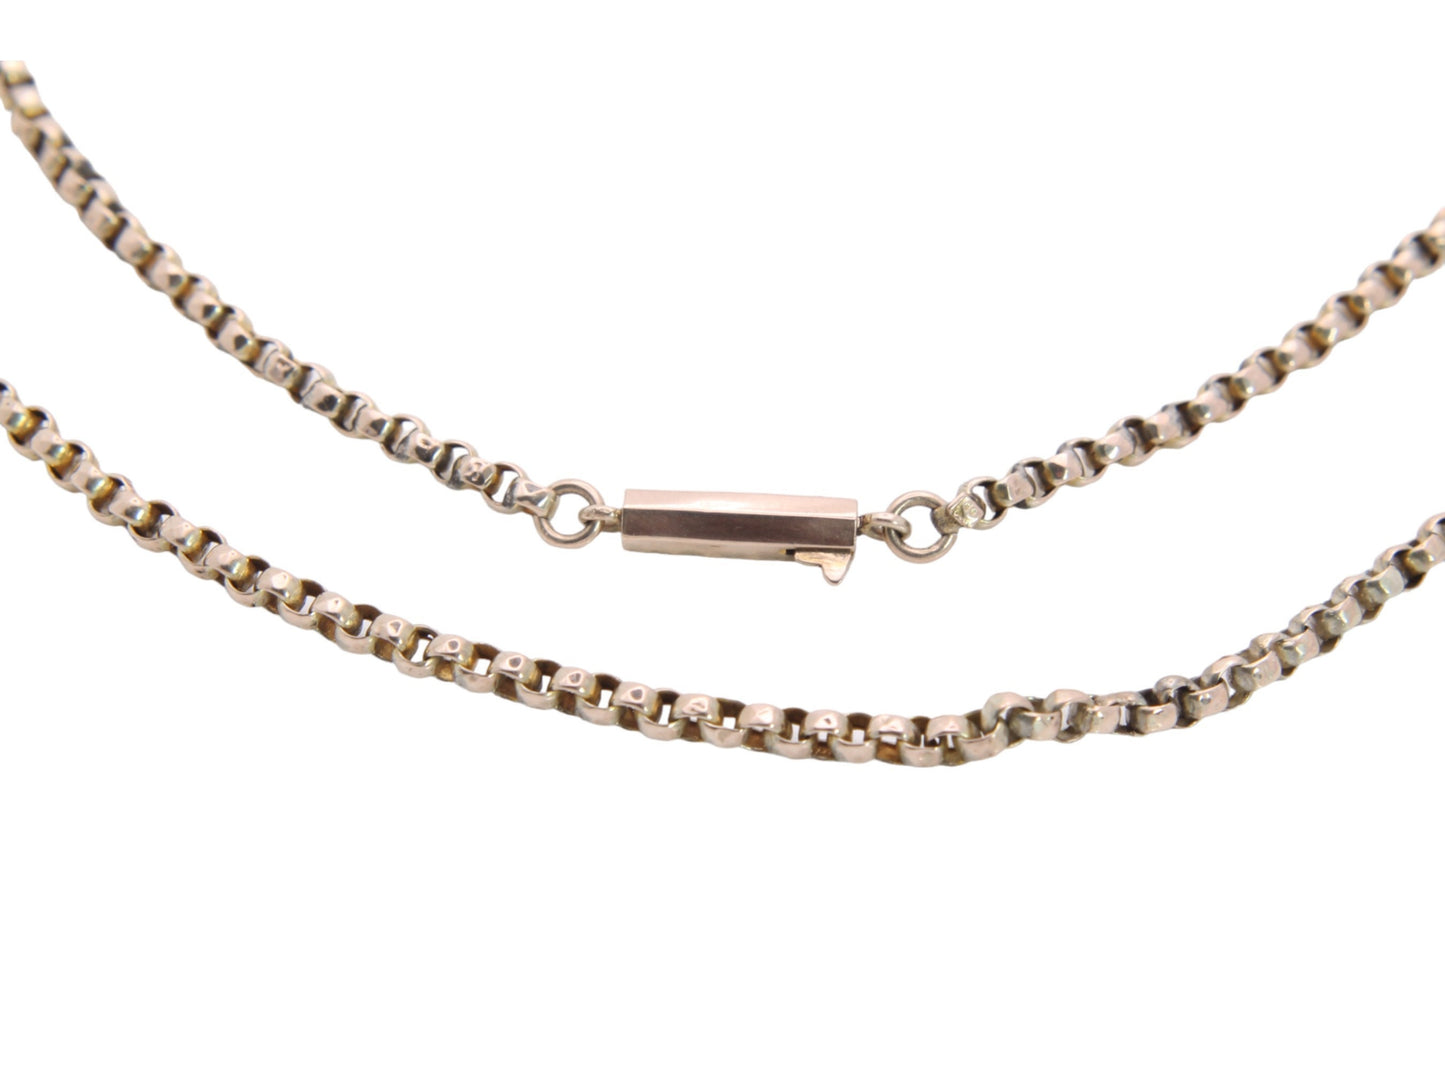 Antique 9ct Gold Belcher Link Necklace